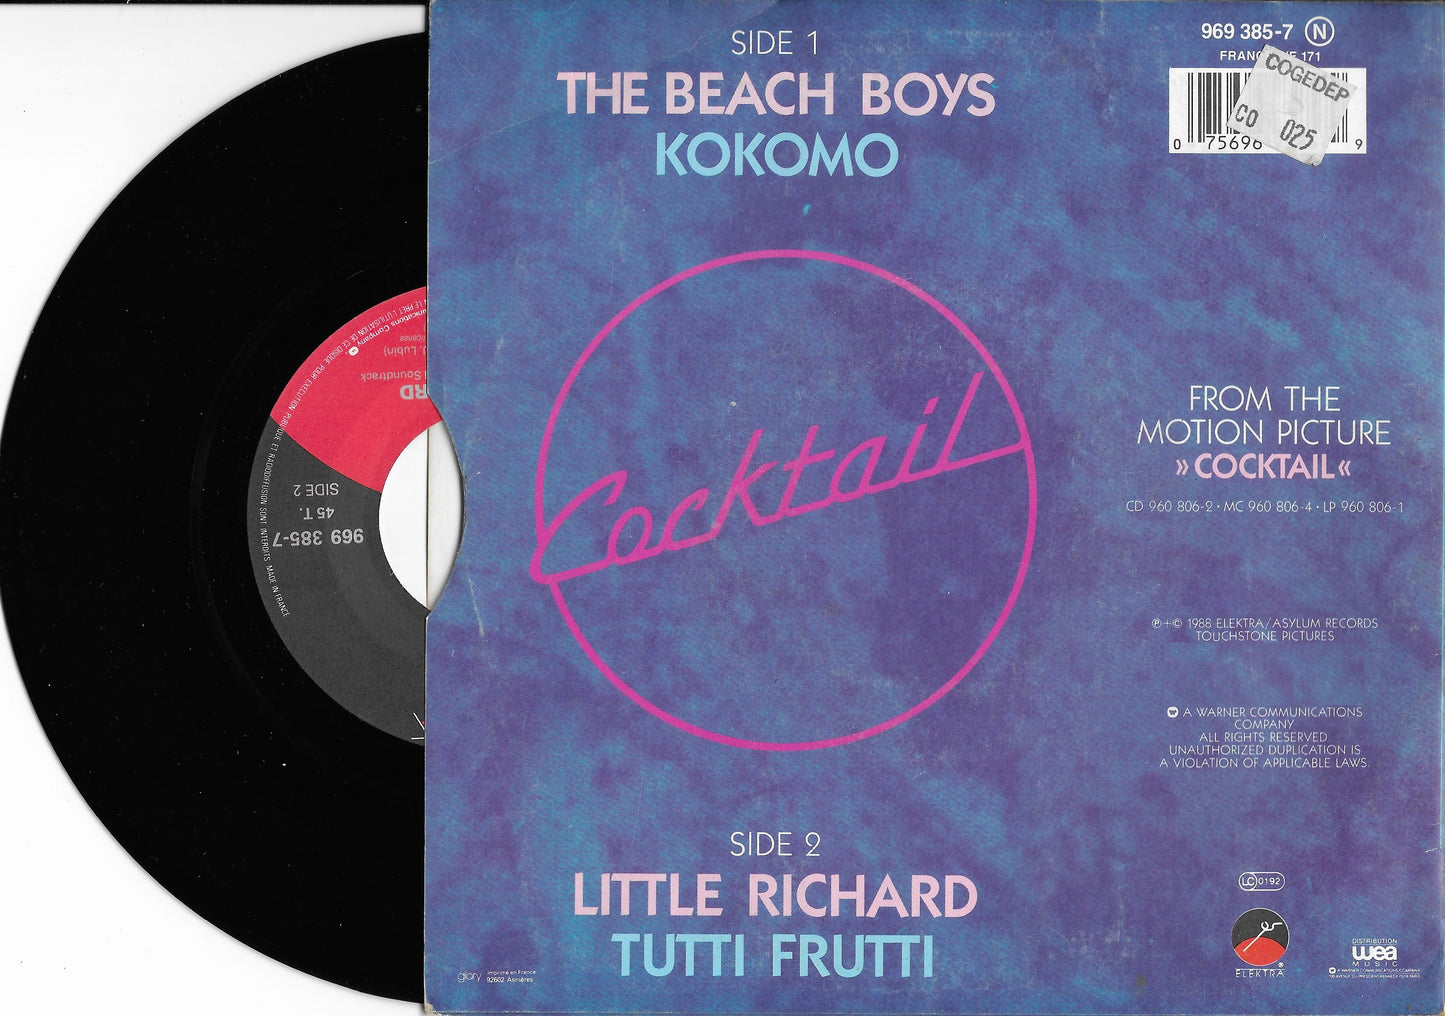 THE BEACH BOYS - Kokomo